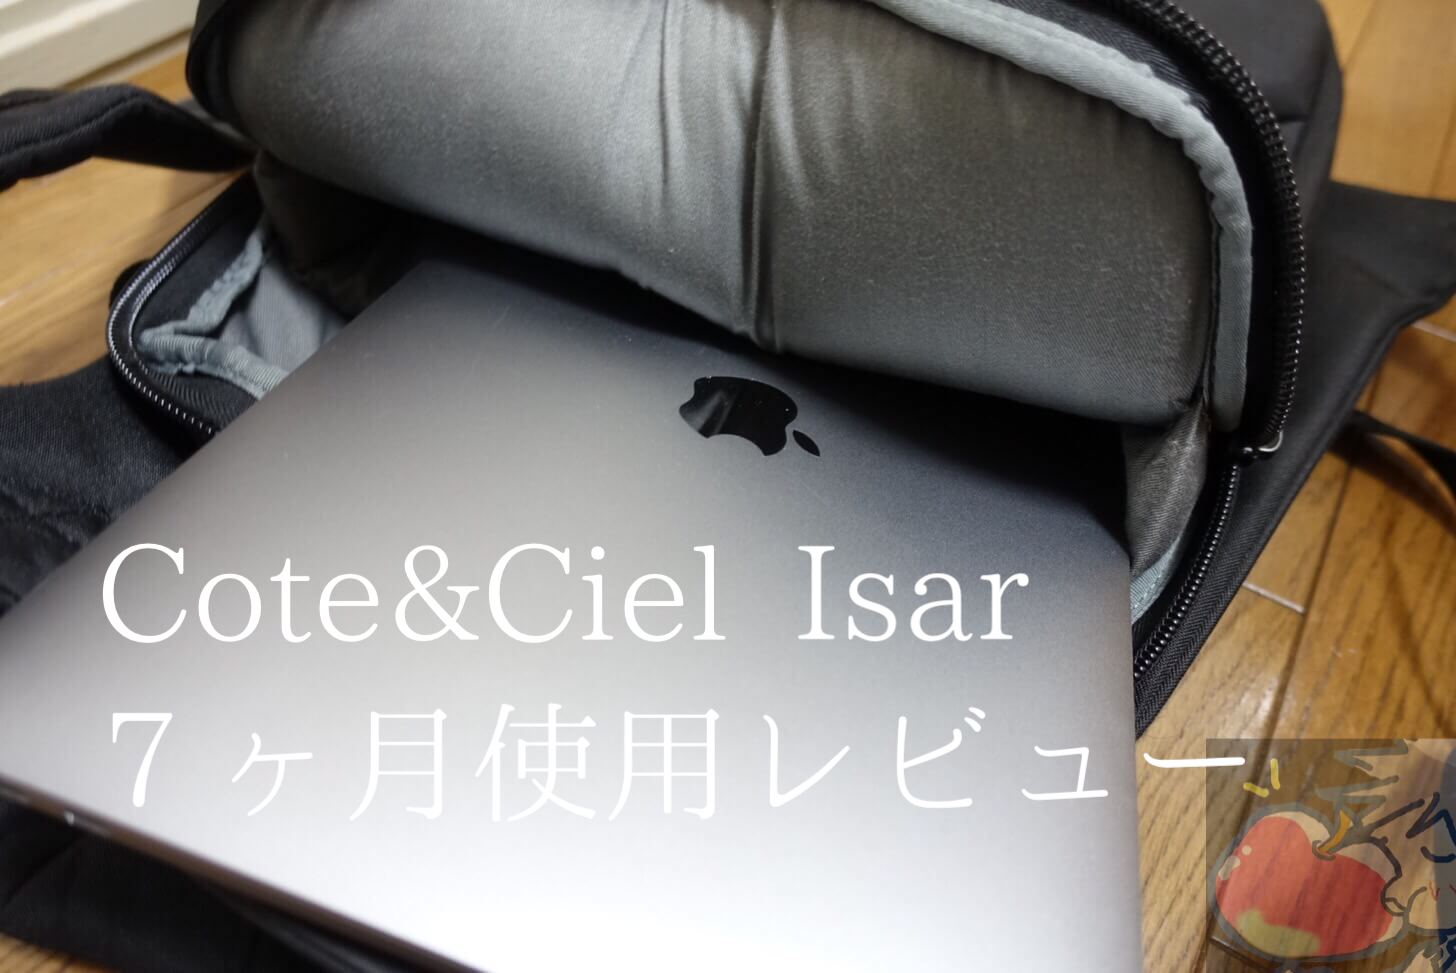 【７ヶ月使用】Cote&Ciel Isarを使うのをやめたApple信者の正直なレビュー